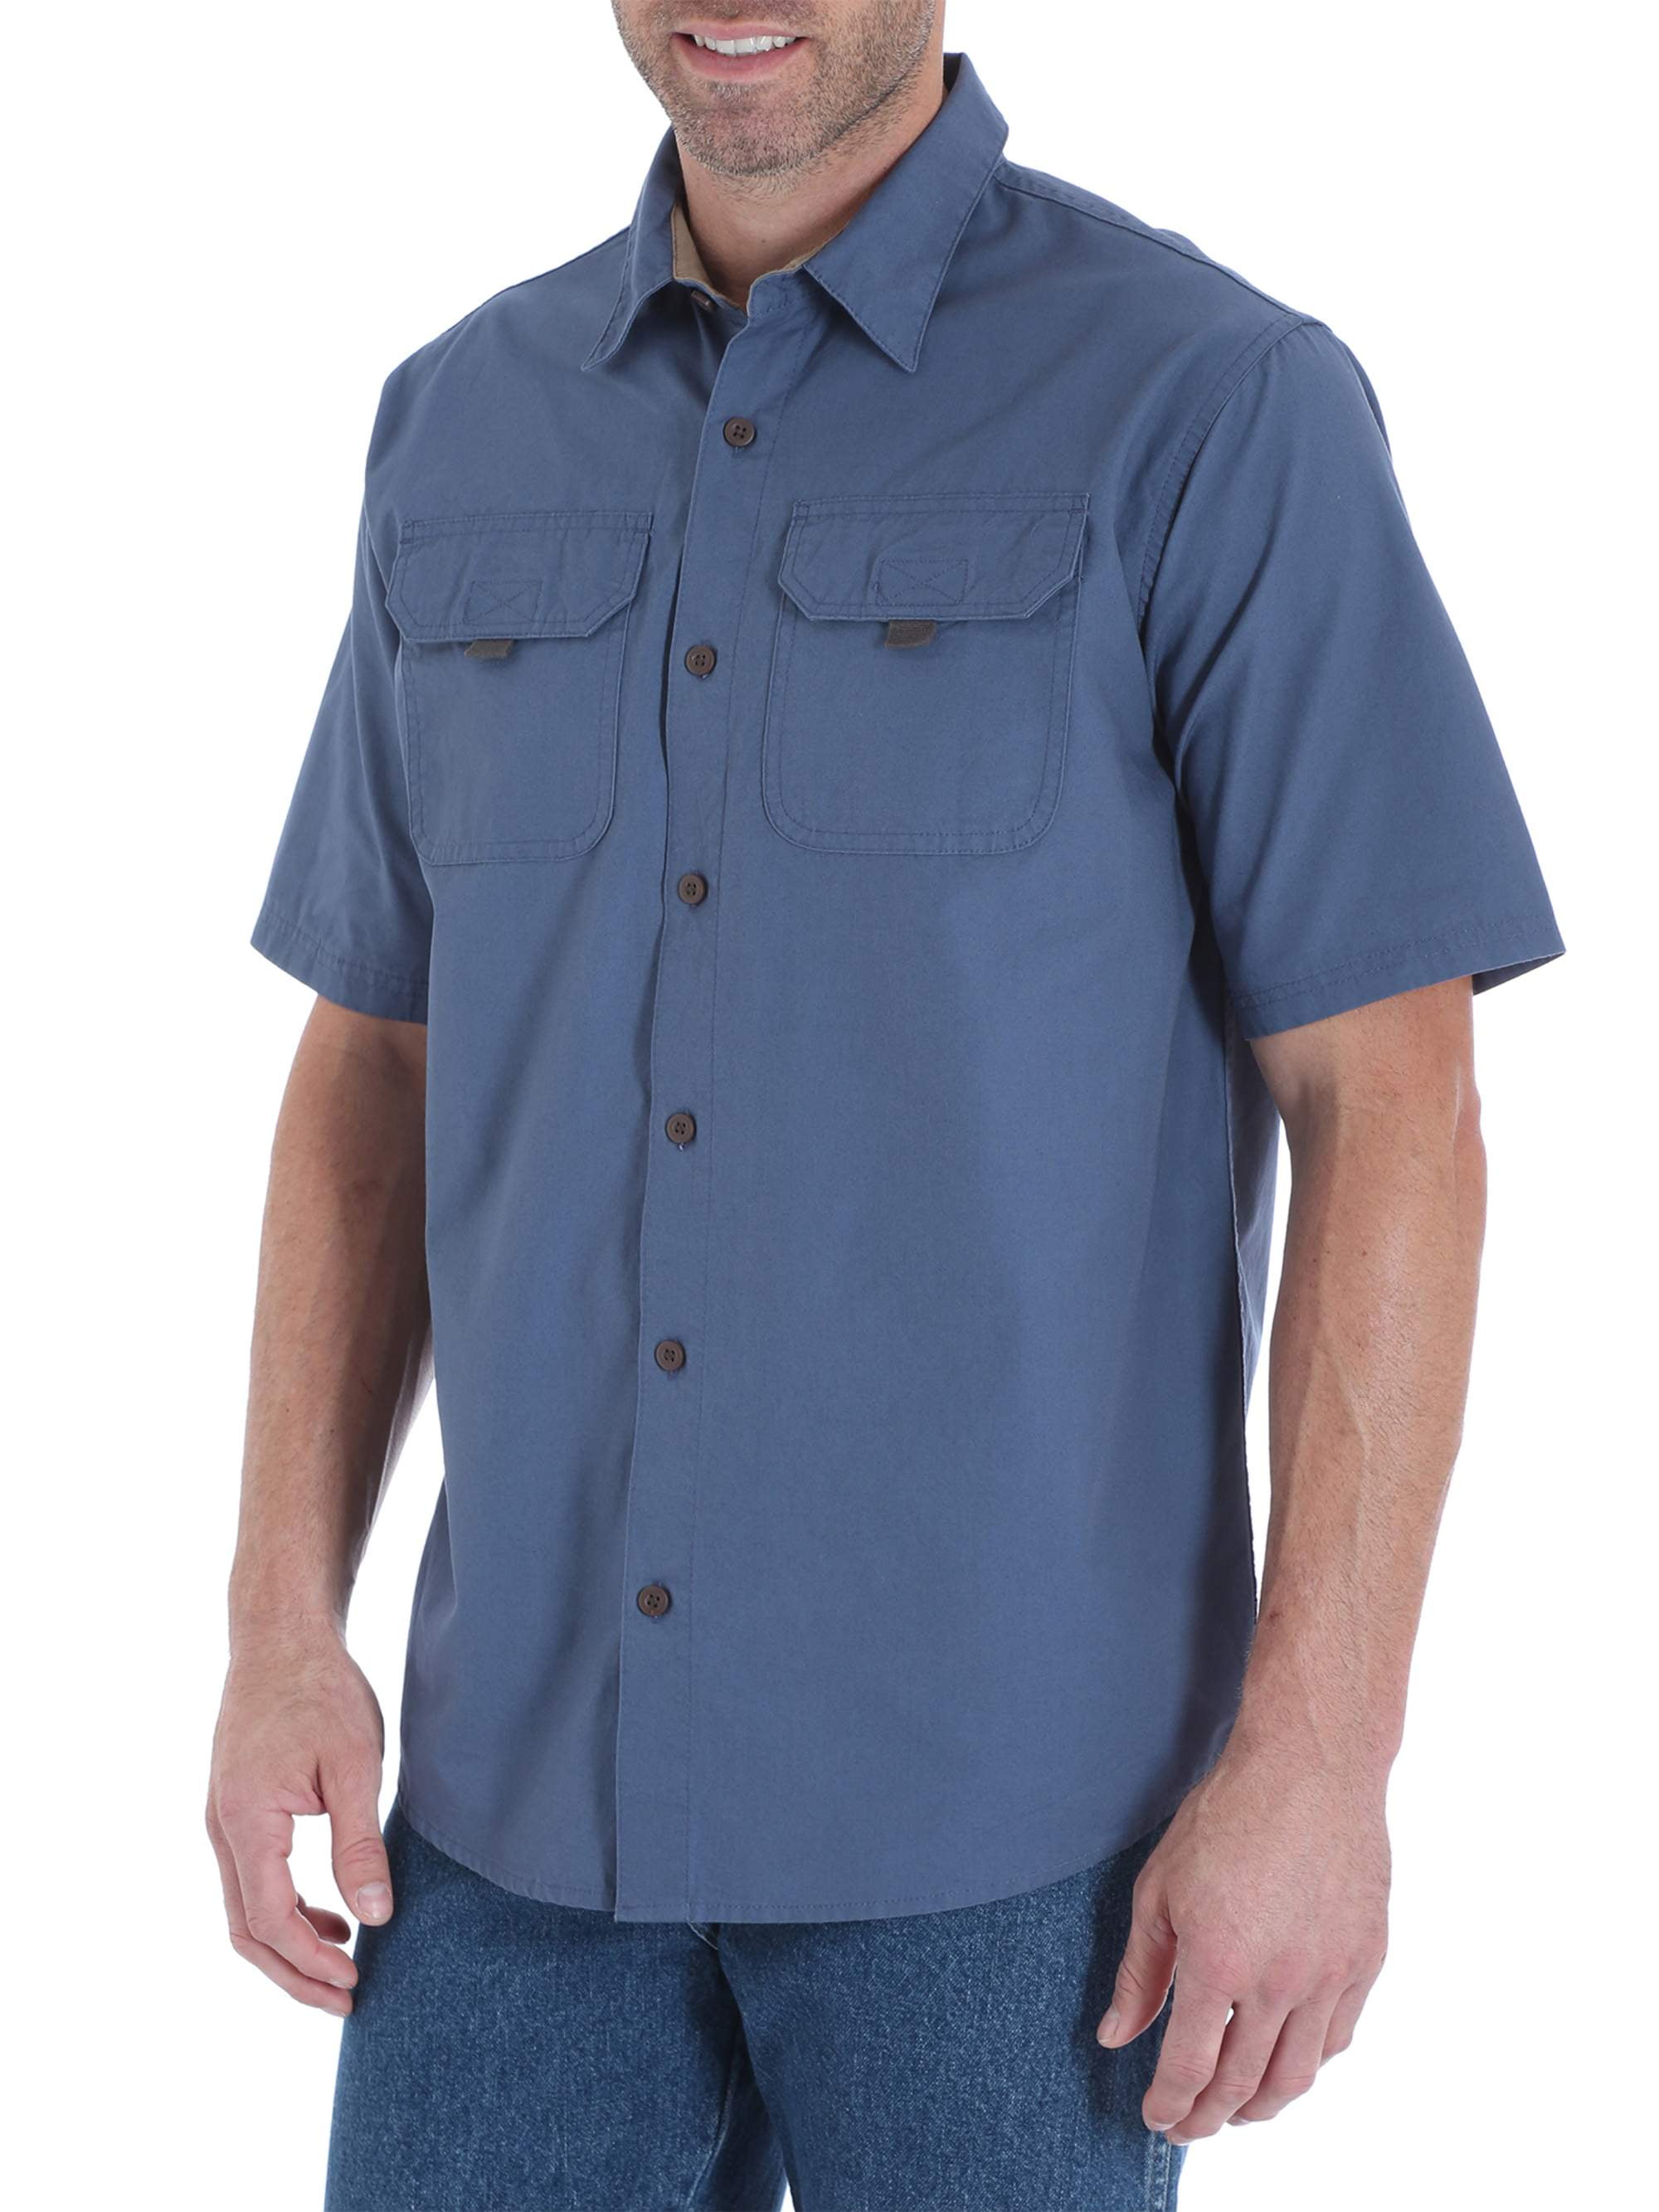 Men's Short Sleeve Canvas Shirt - Walmart.com